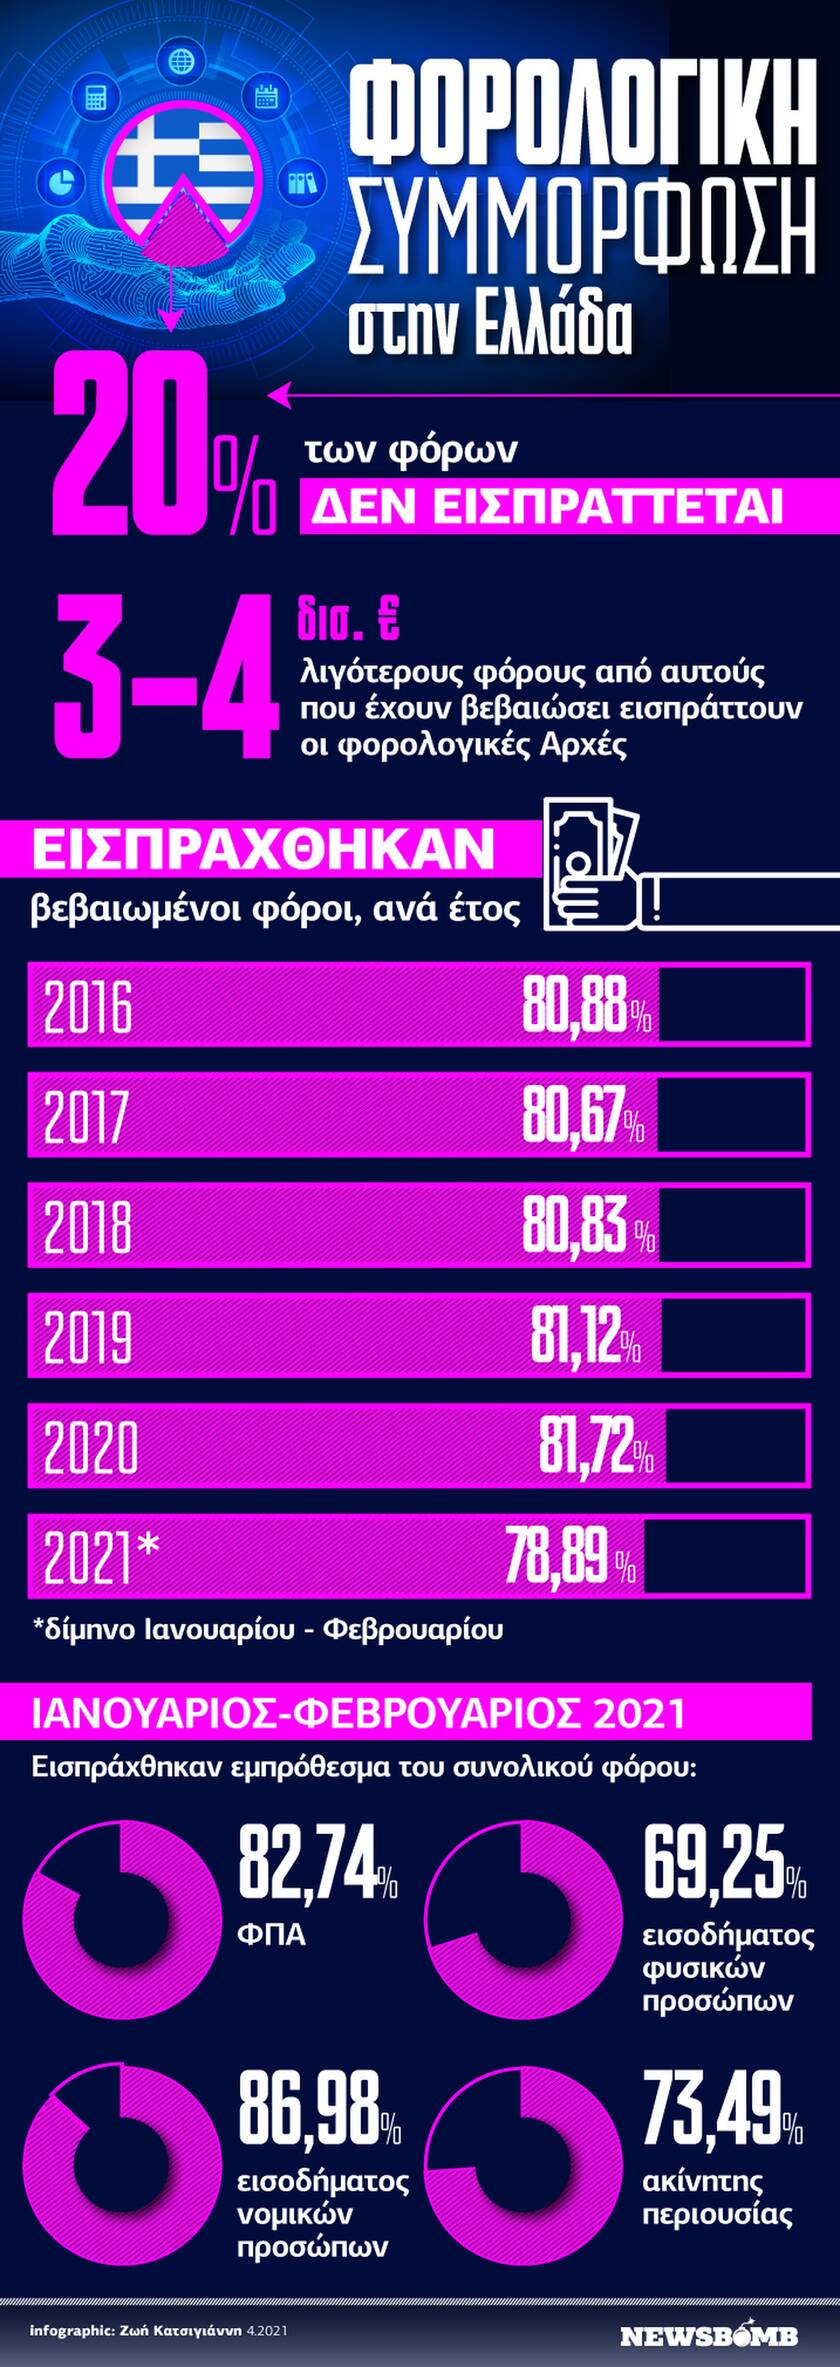 Χαμηλή η φορολογική συμμόρφωση στην Ελλάδα - Δείτε το infographic του Newsbomb.gr